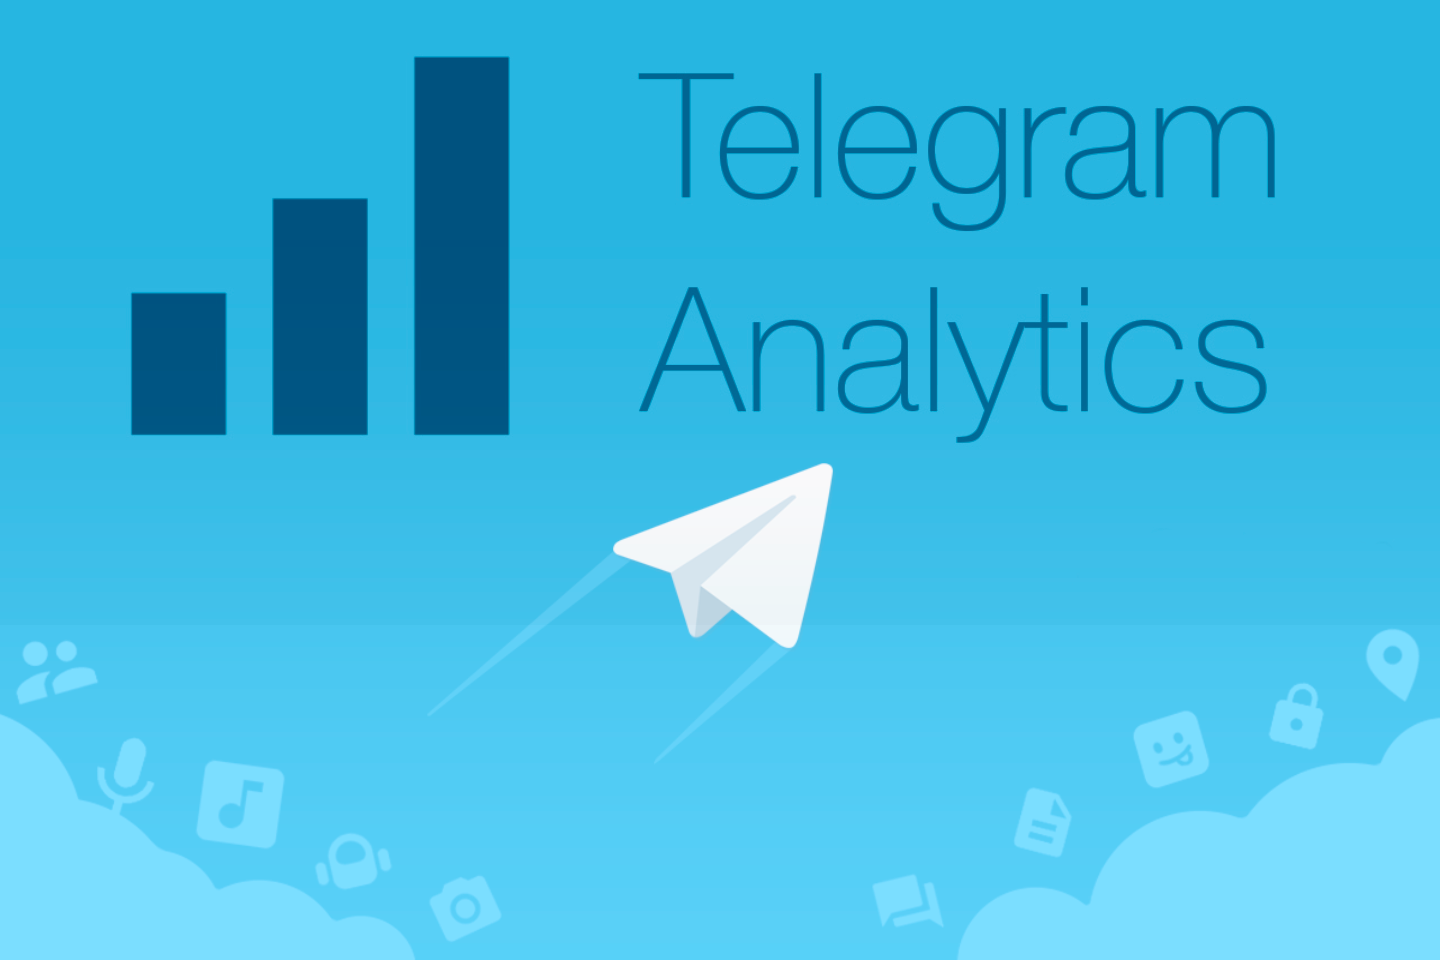 Сервисы для аналитики Telegram-каналов